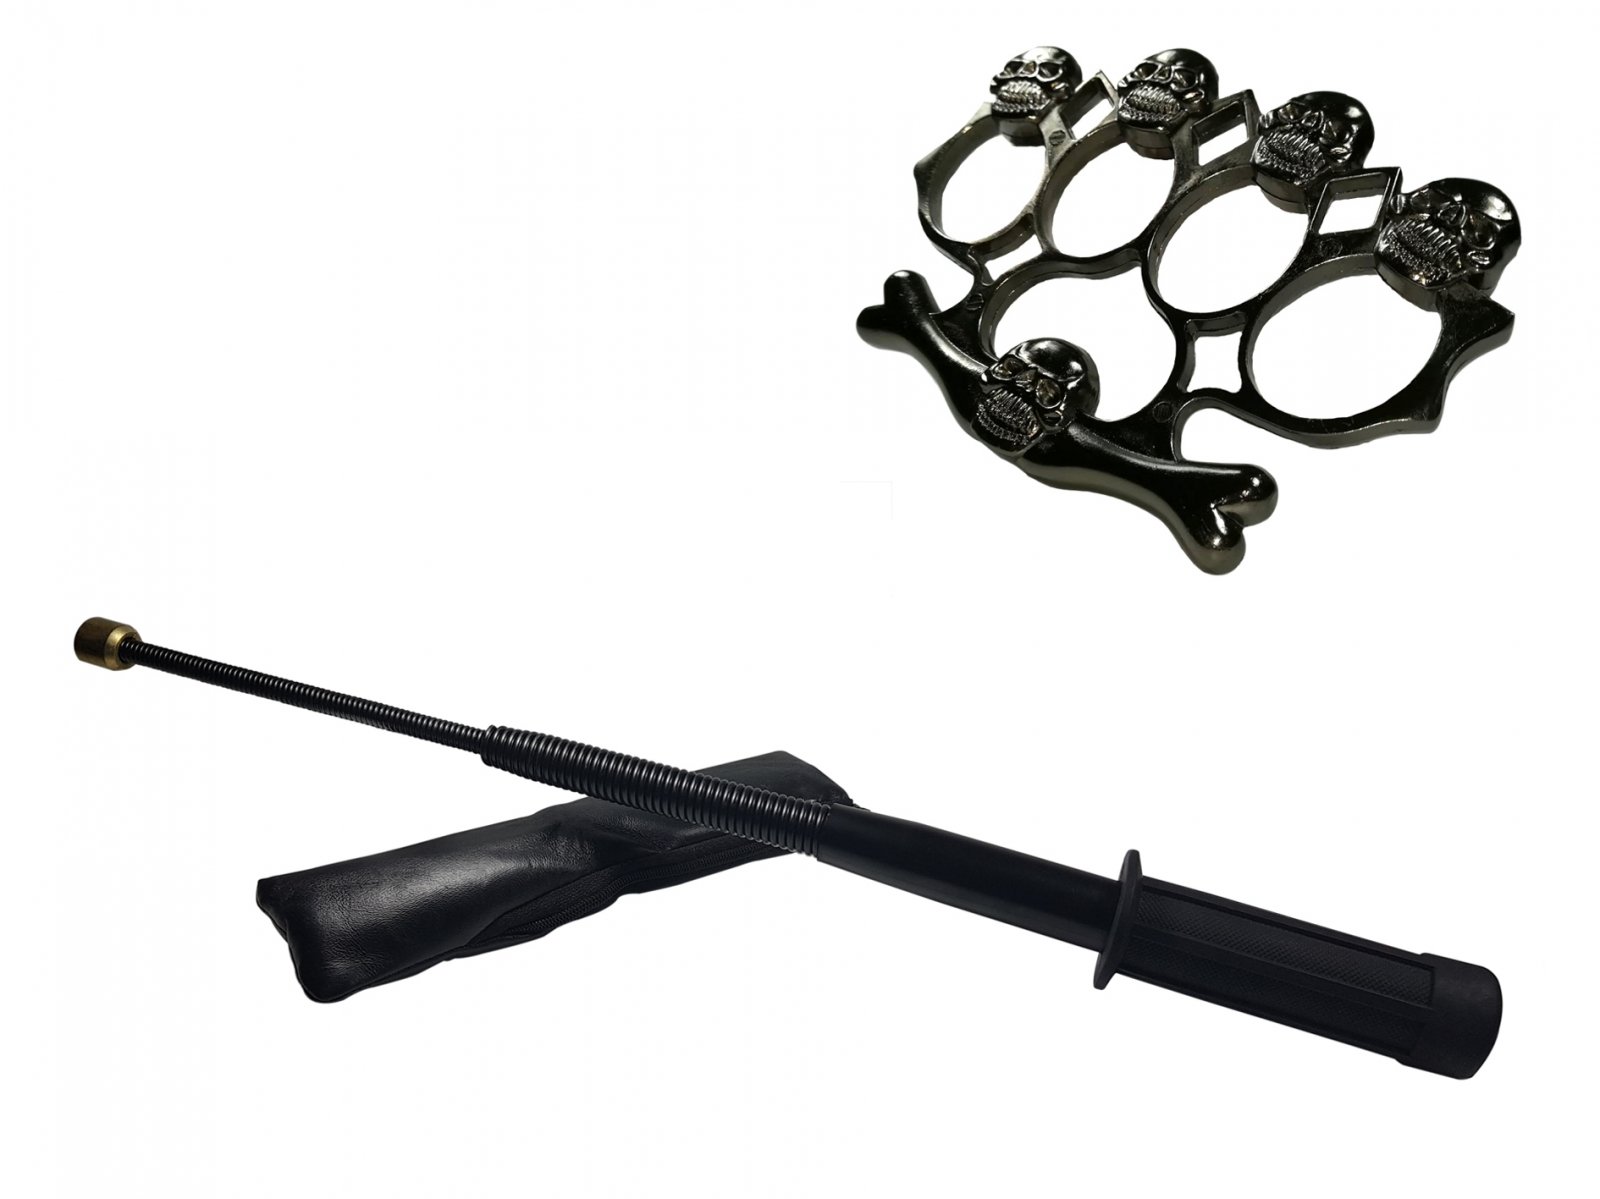 Set baston telescopic flexibil negru maner tip tonfa 47 cm + box,rozeta craniu negru